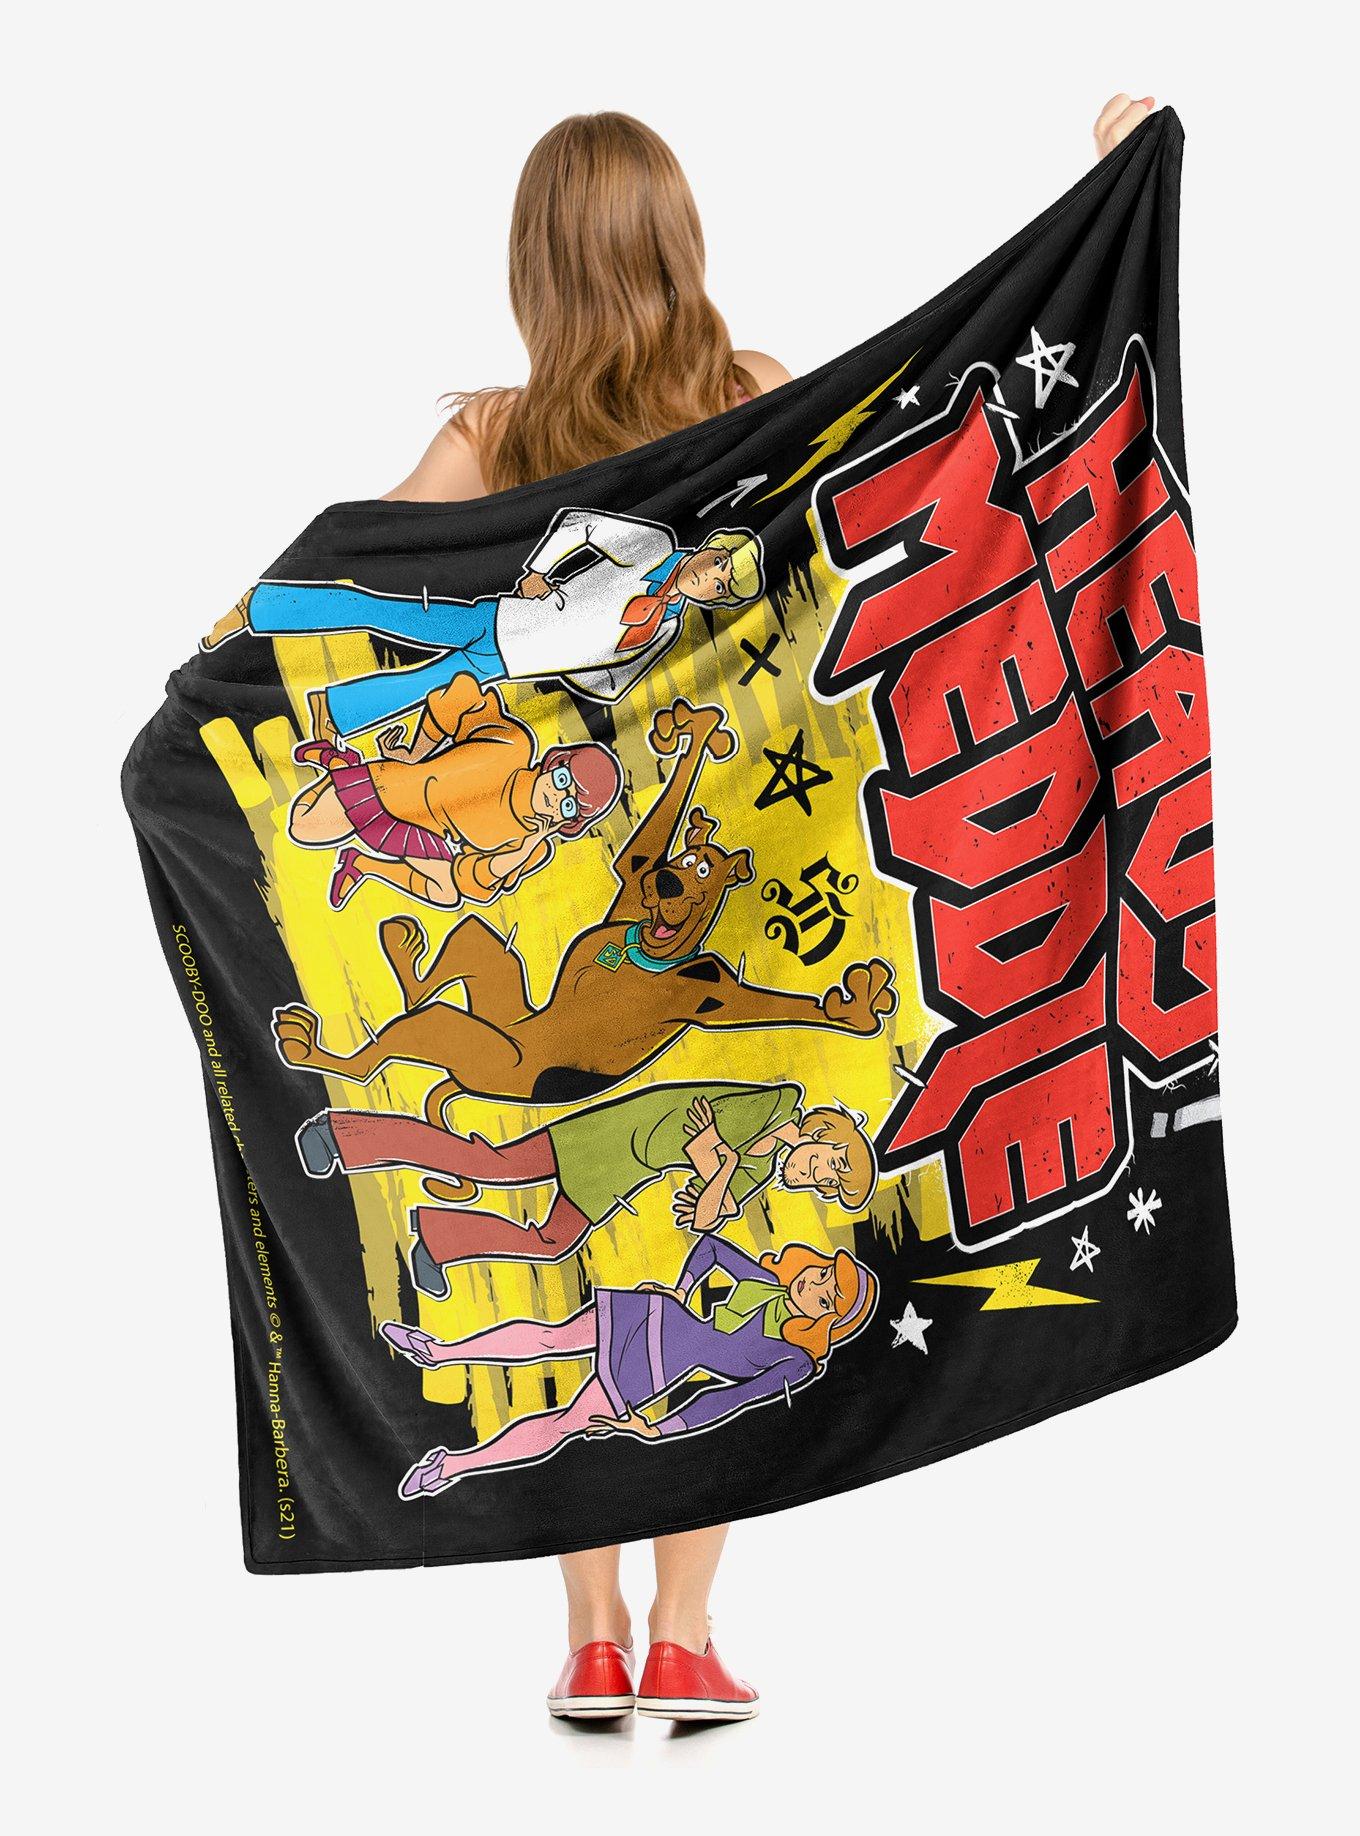 Scooby-Doo Heavy Meddle Throw Blanket, , hi-res